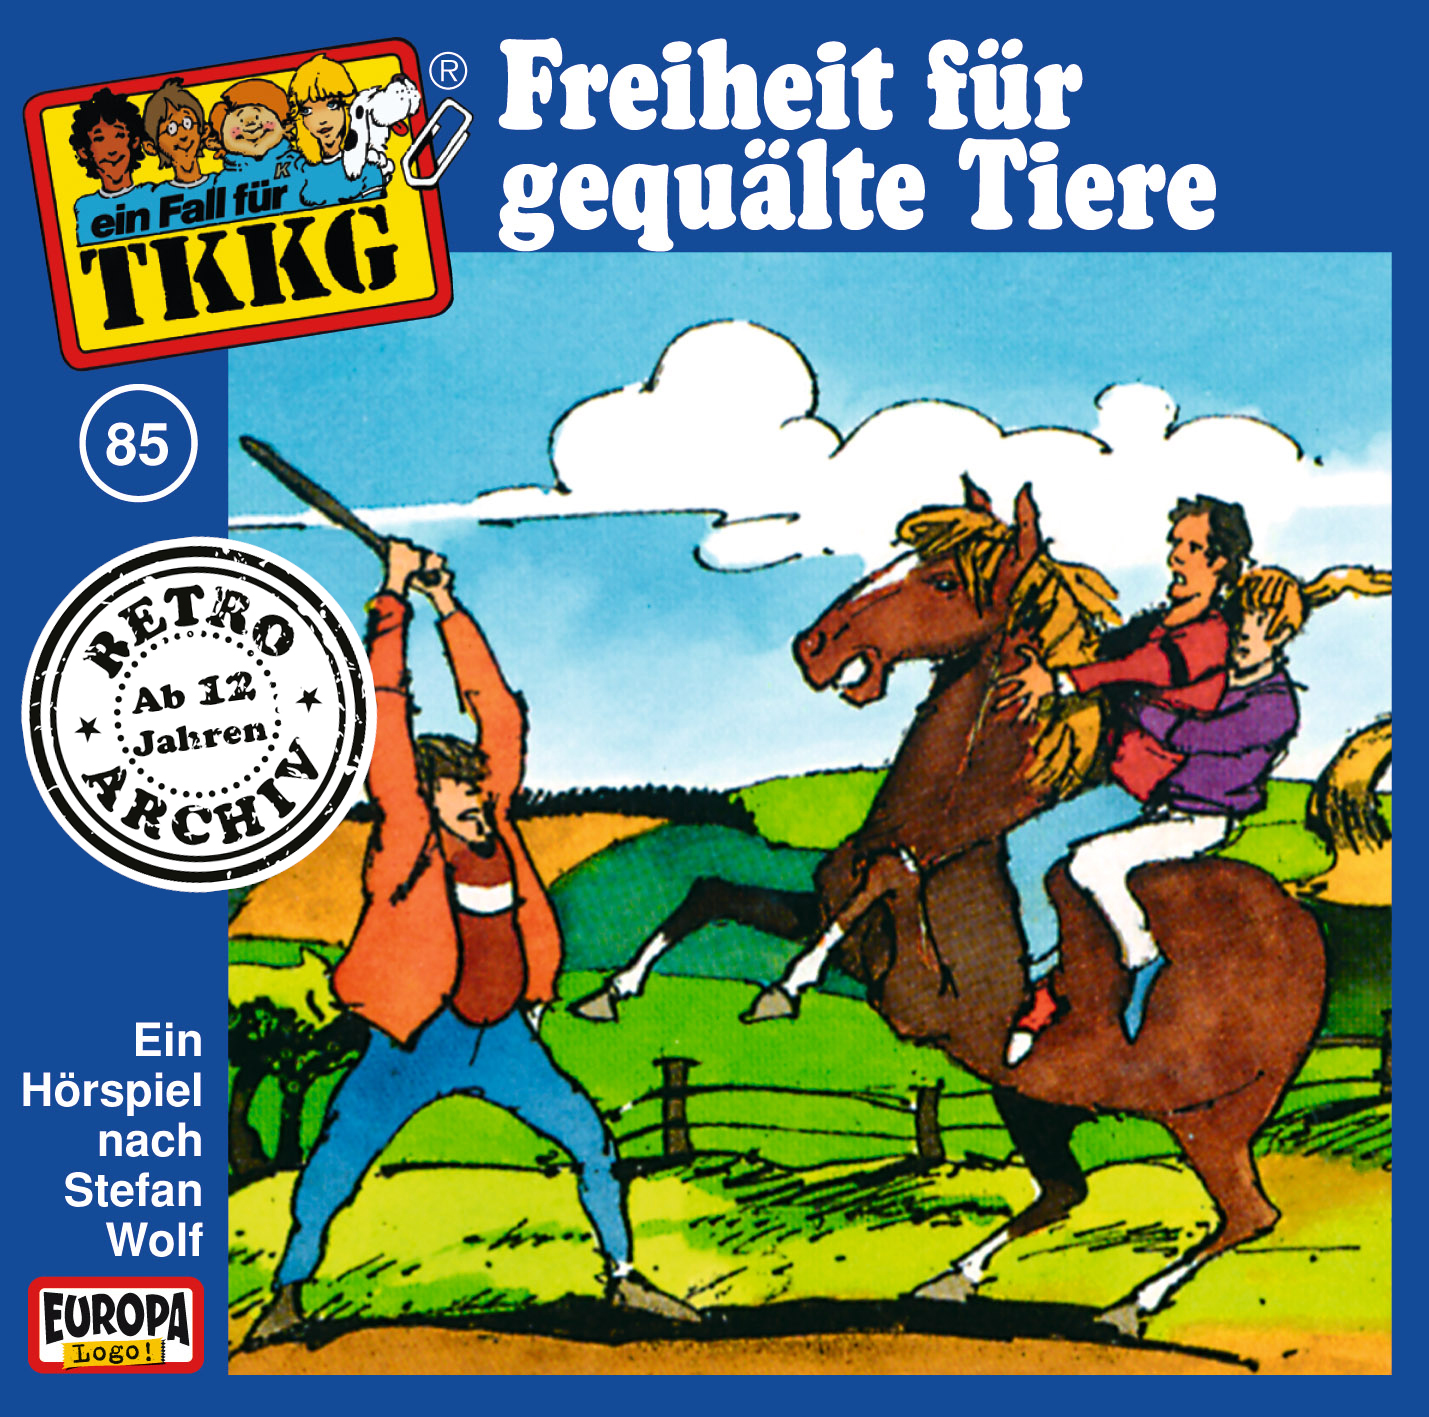 TKKG Retro-Archiv - Freiheit für gequälte Tiere